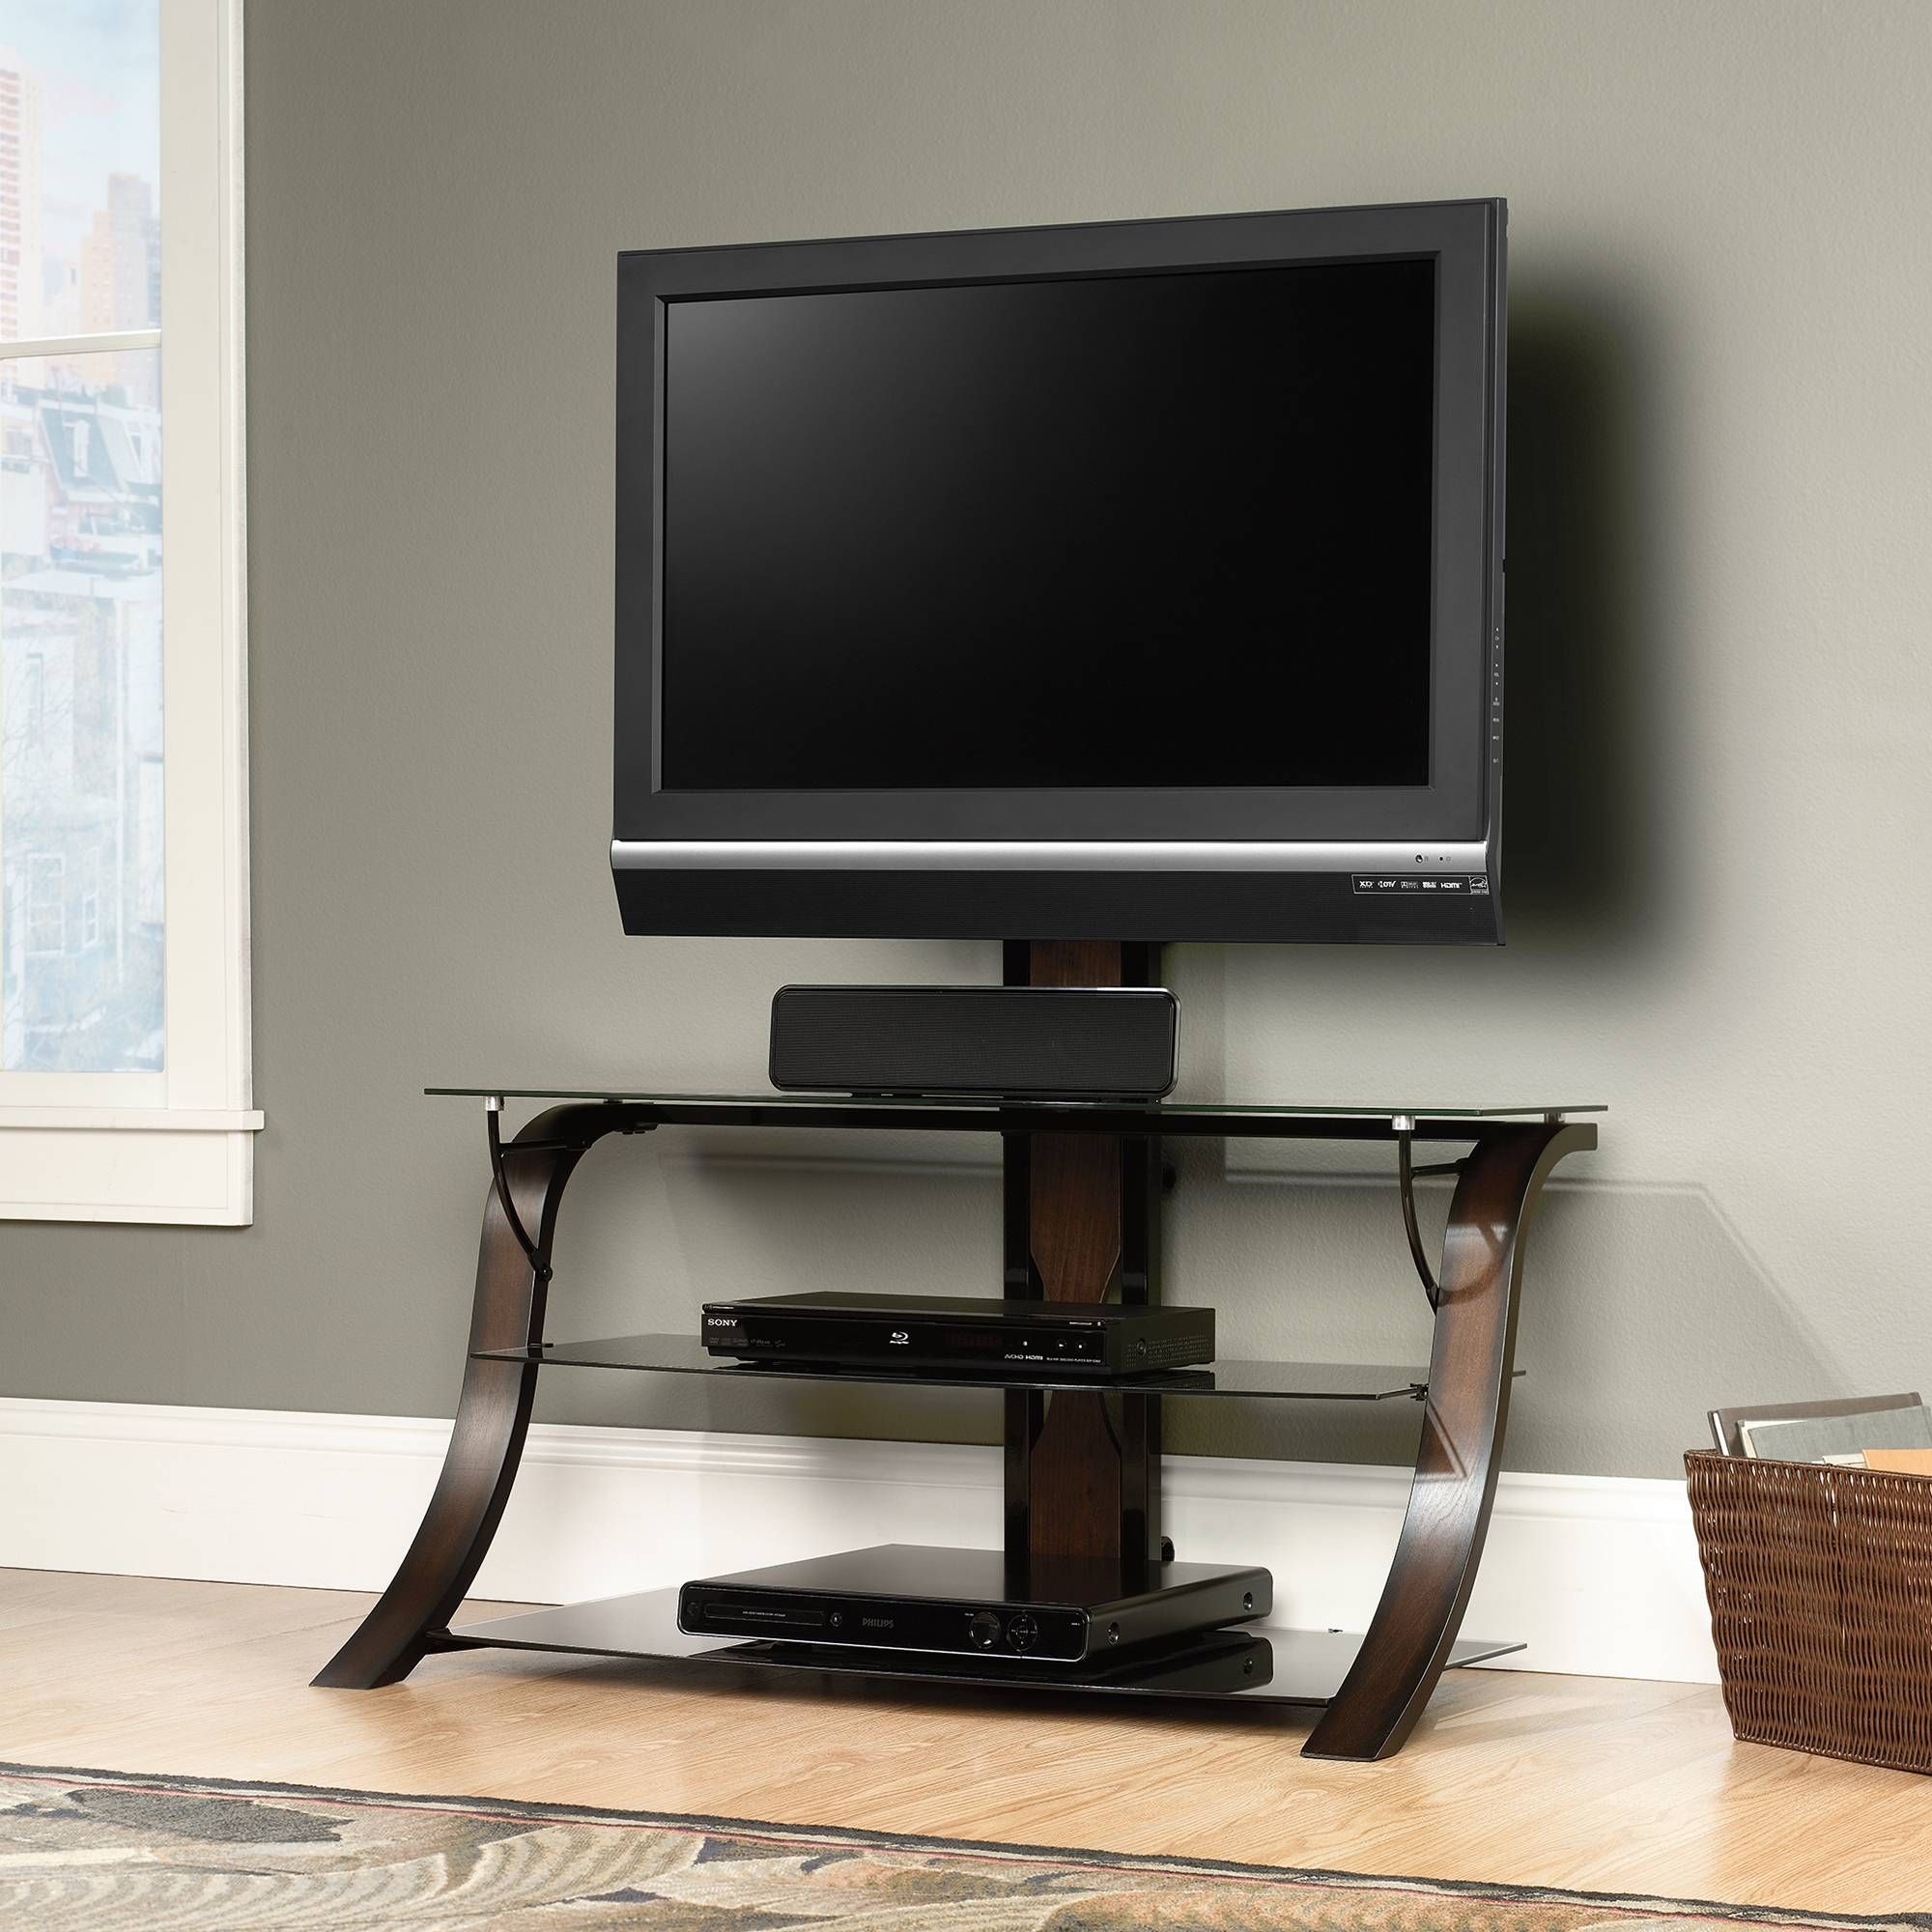 Furniture: The Living Room Denver With Sauder Tv Stands For Denver Tv Stands (View 2 of 15)